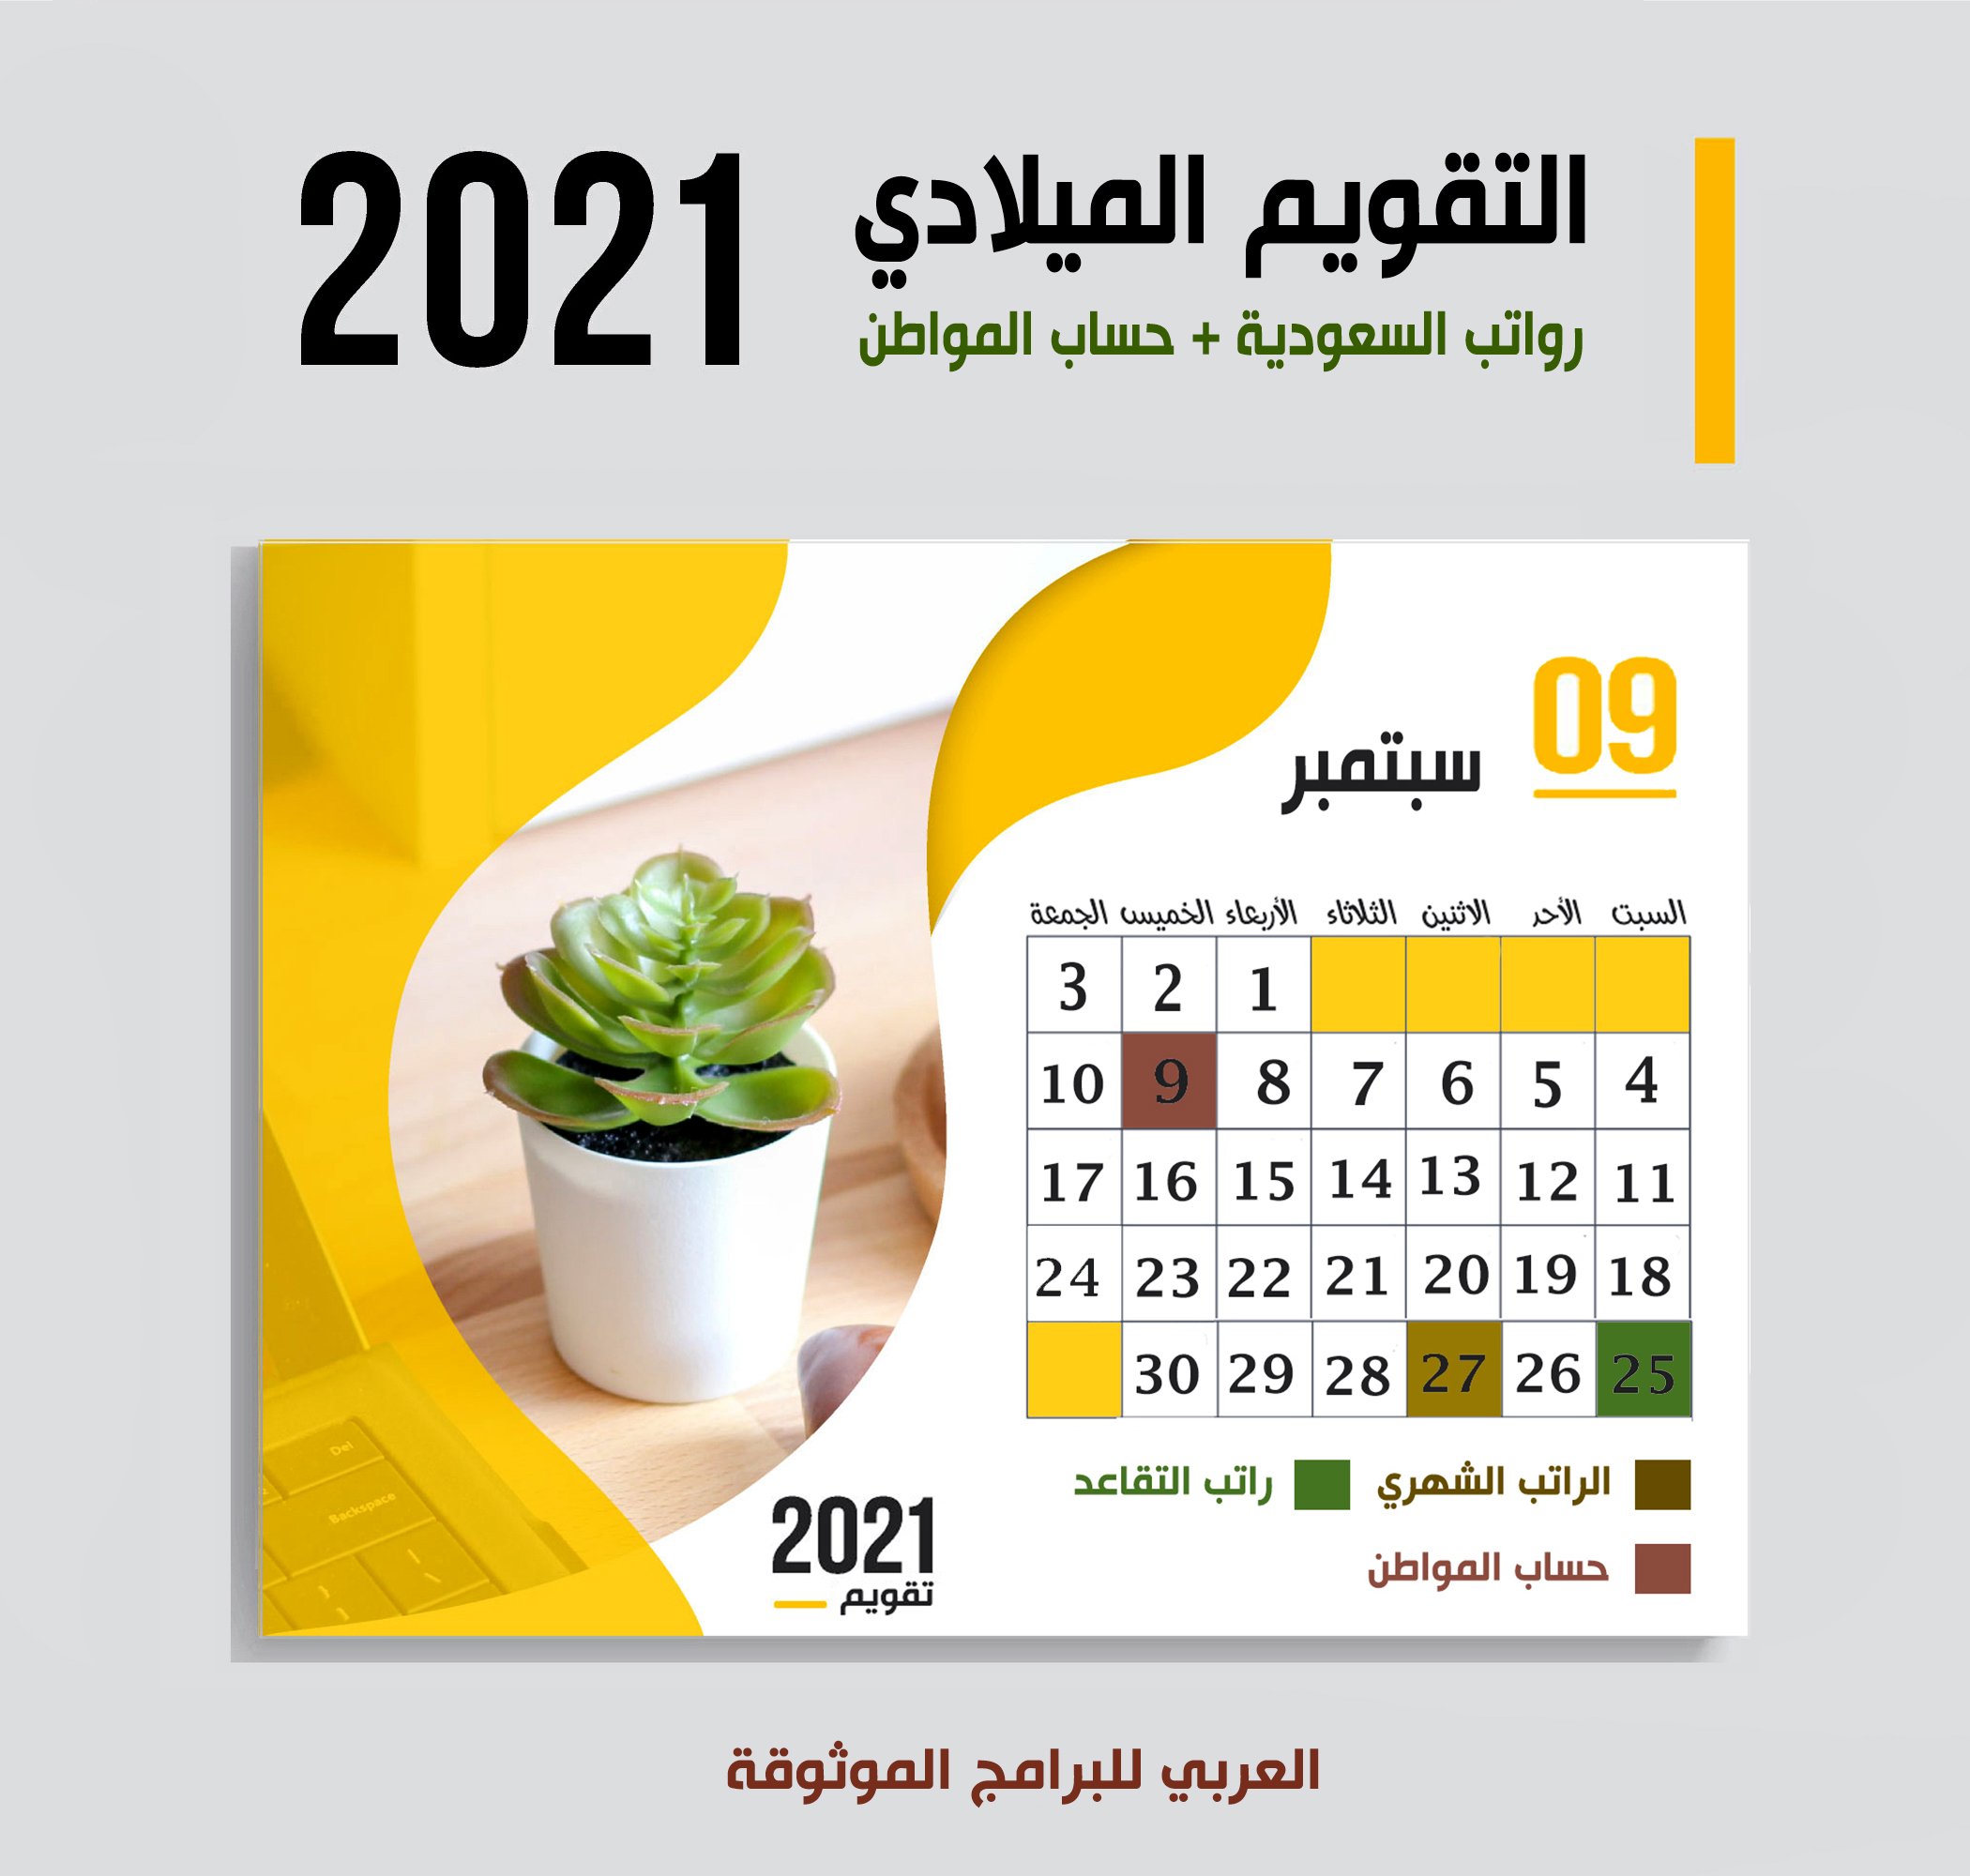 موعد صرف رواتب السعودية شهر سبتمبر 2021 موعد حساب المواطن + رواتب التقاعد الضمان